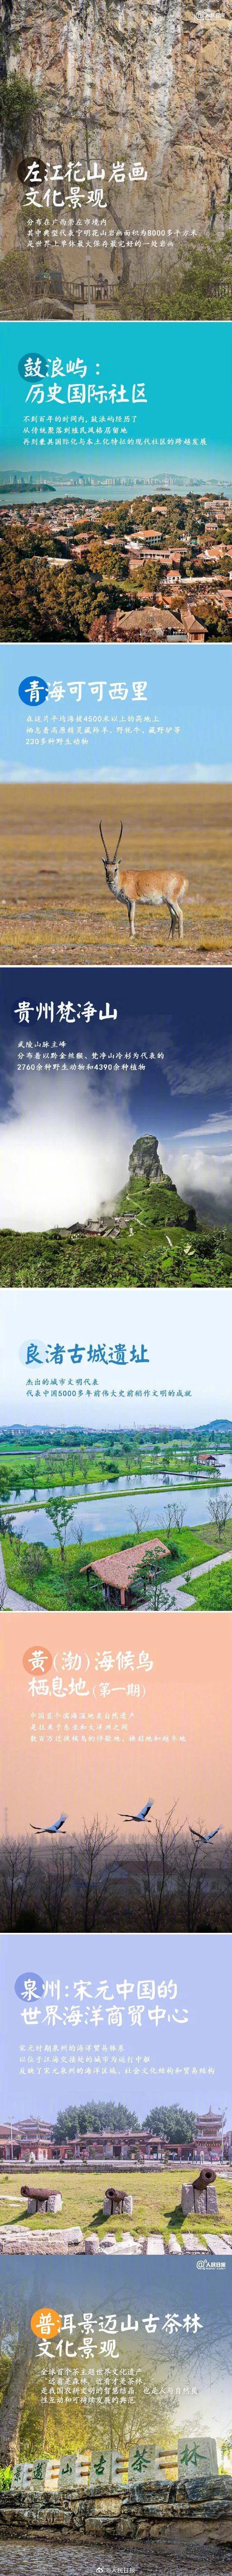 古茶林文化景观,中国已有57处列入联合国教科文组织名录的世界遗产